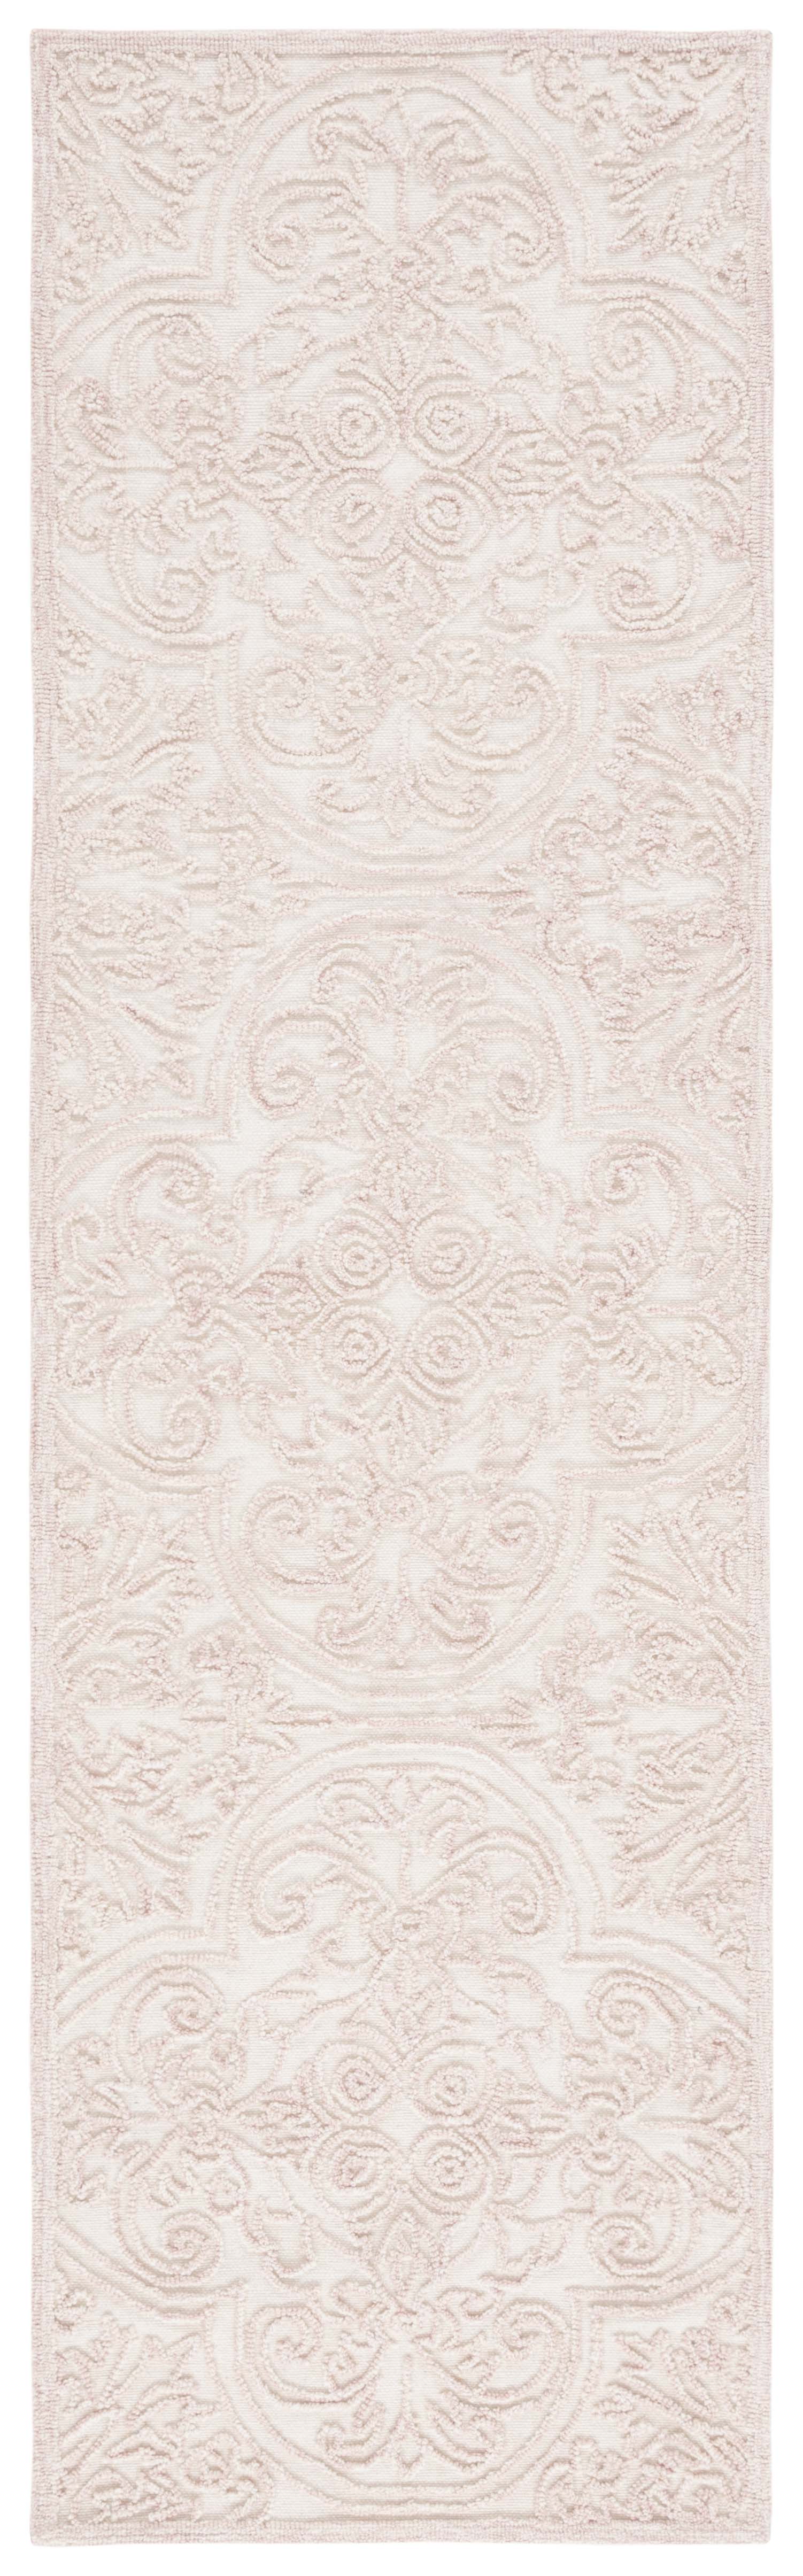 Safavieh Martha Stewart Msr3511U Ivory/Pink Area Rug